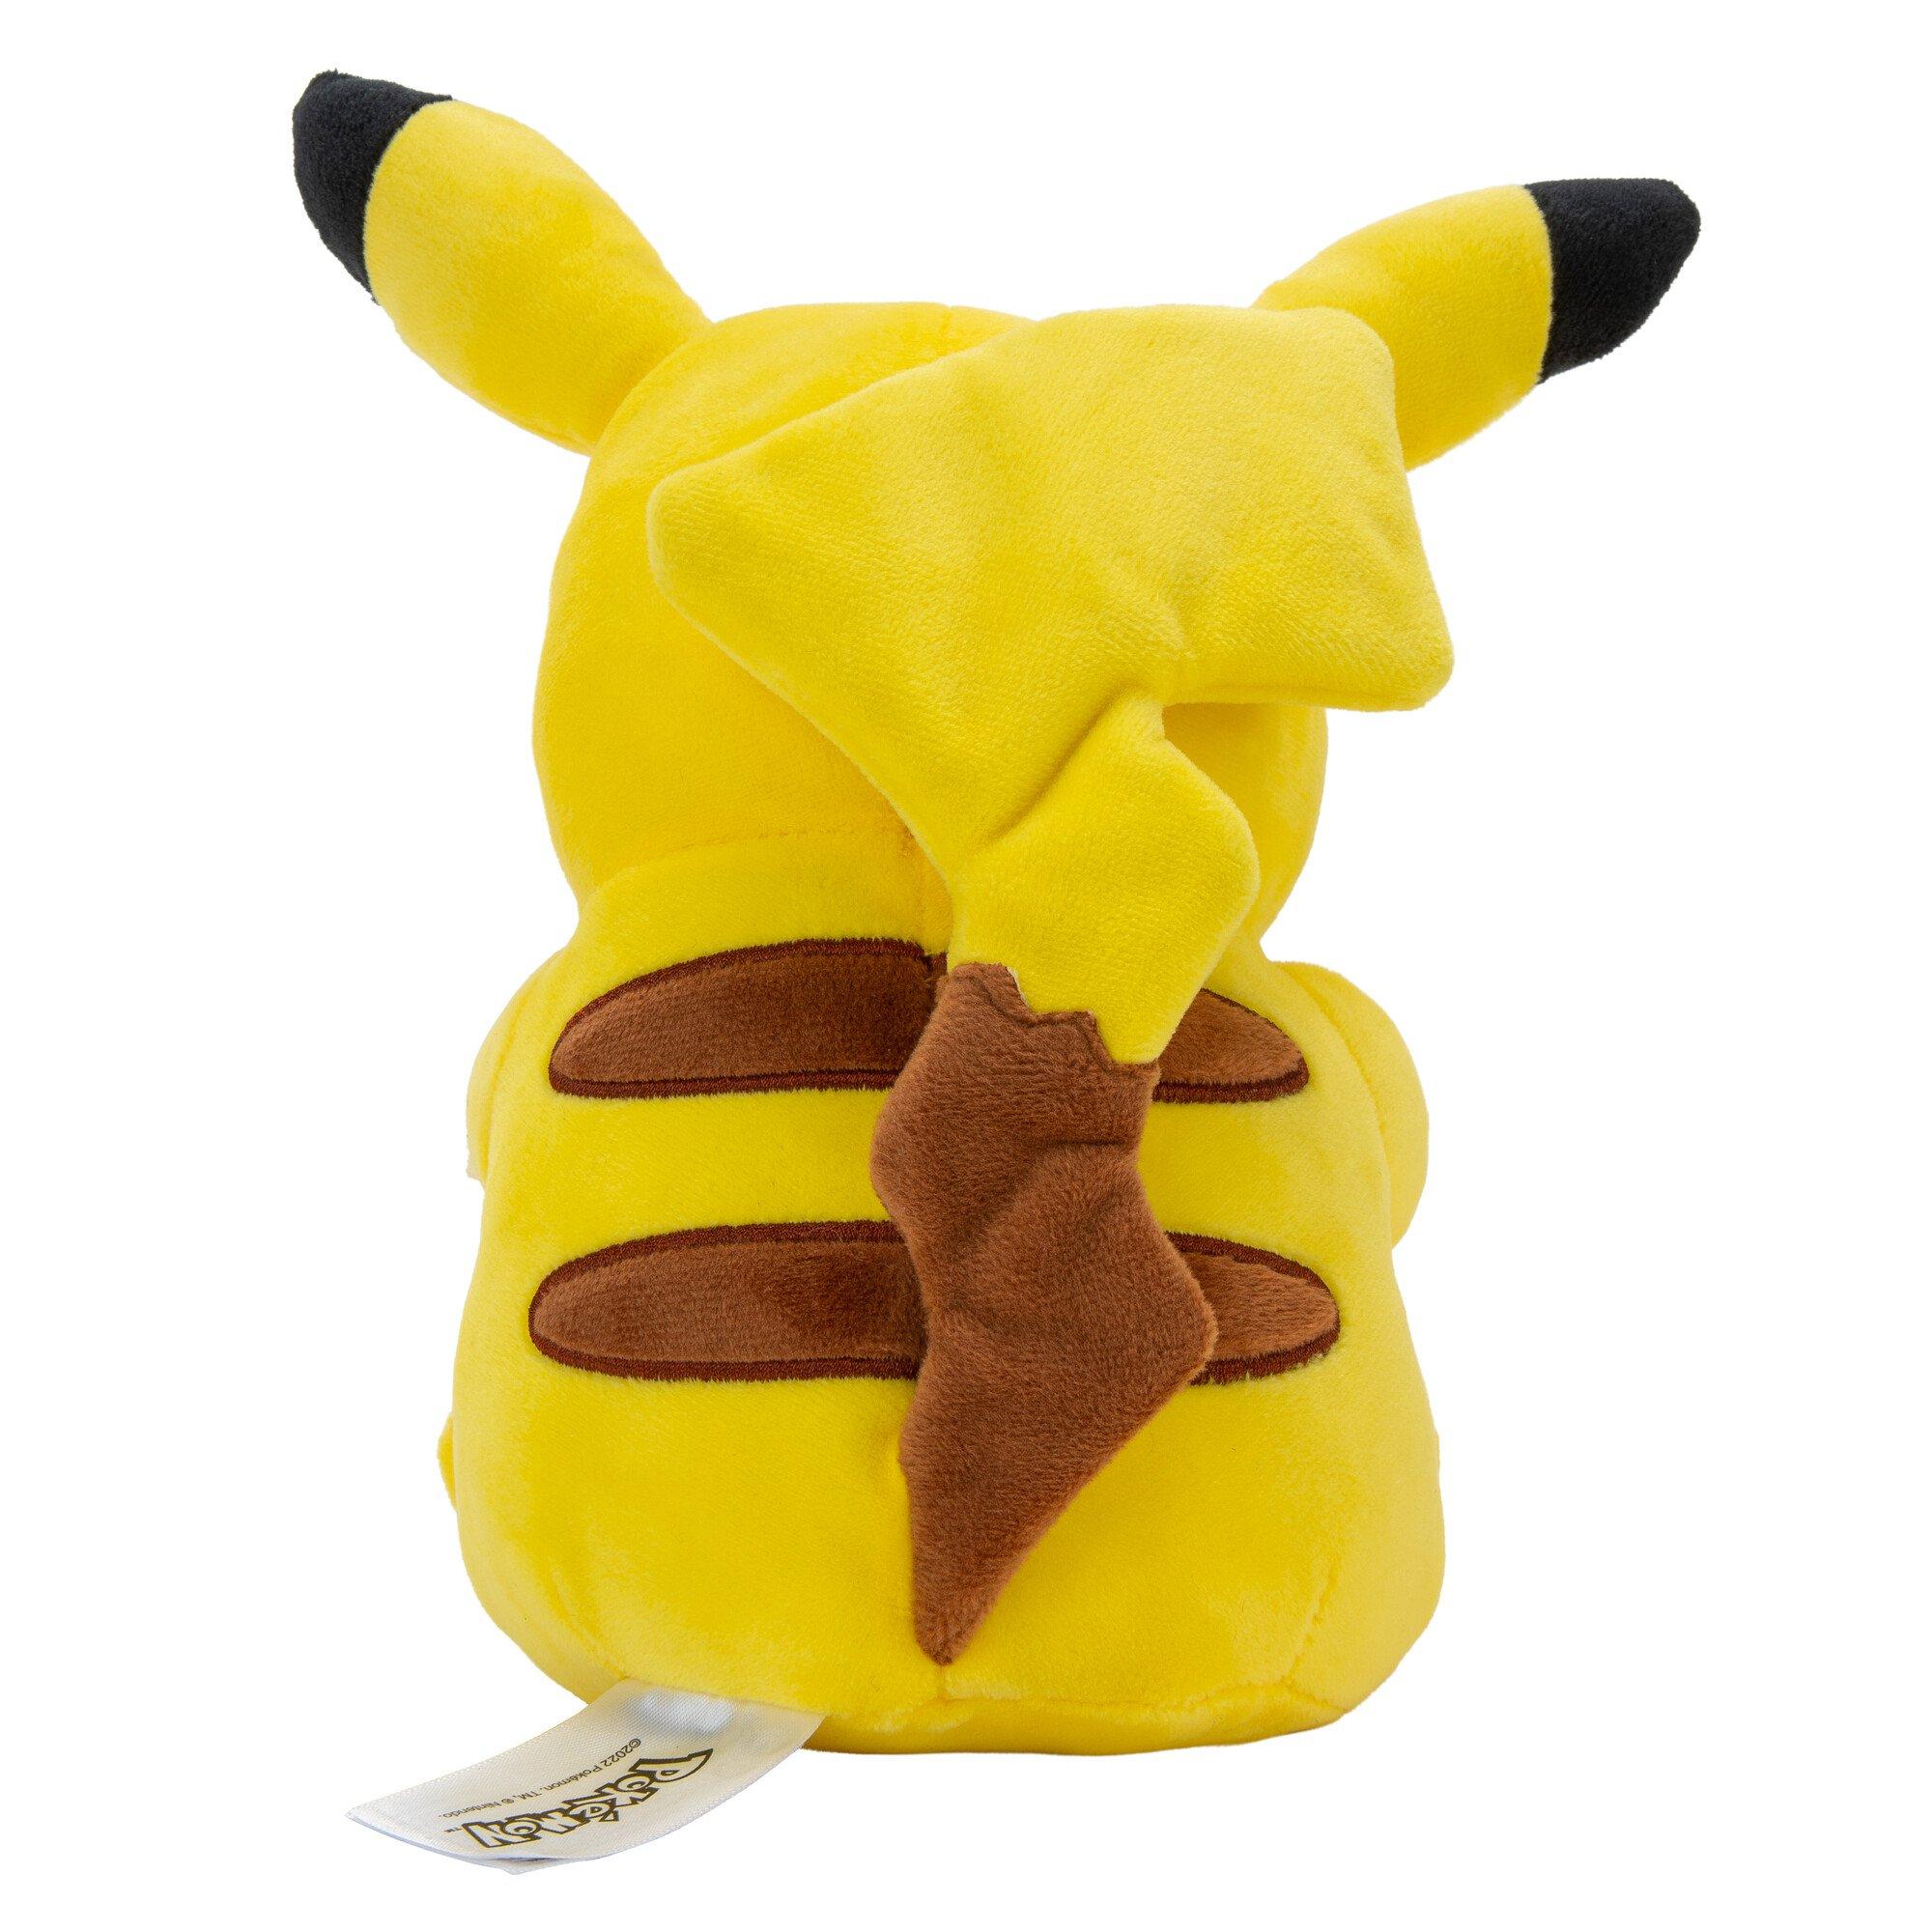 Pokemon Pikachu With Heart Poke Ball - 8 Stuffed Animal - Great